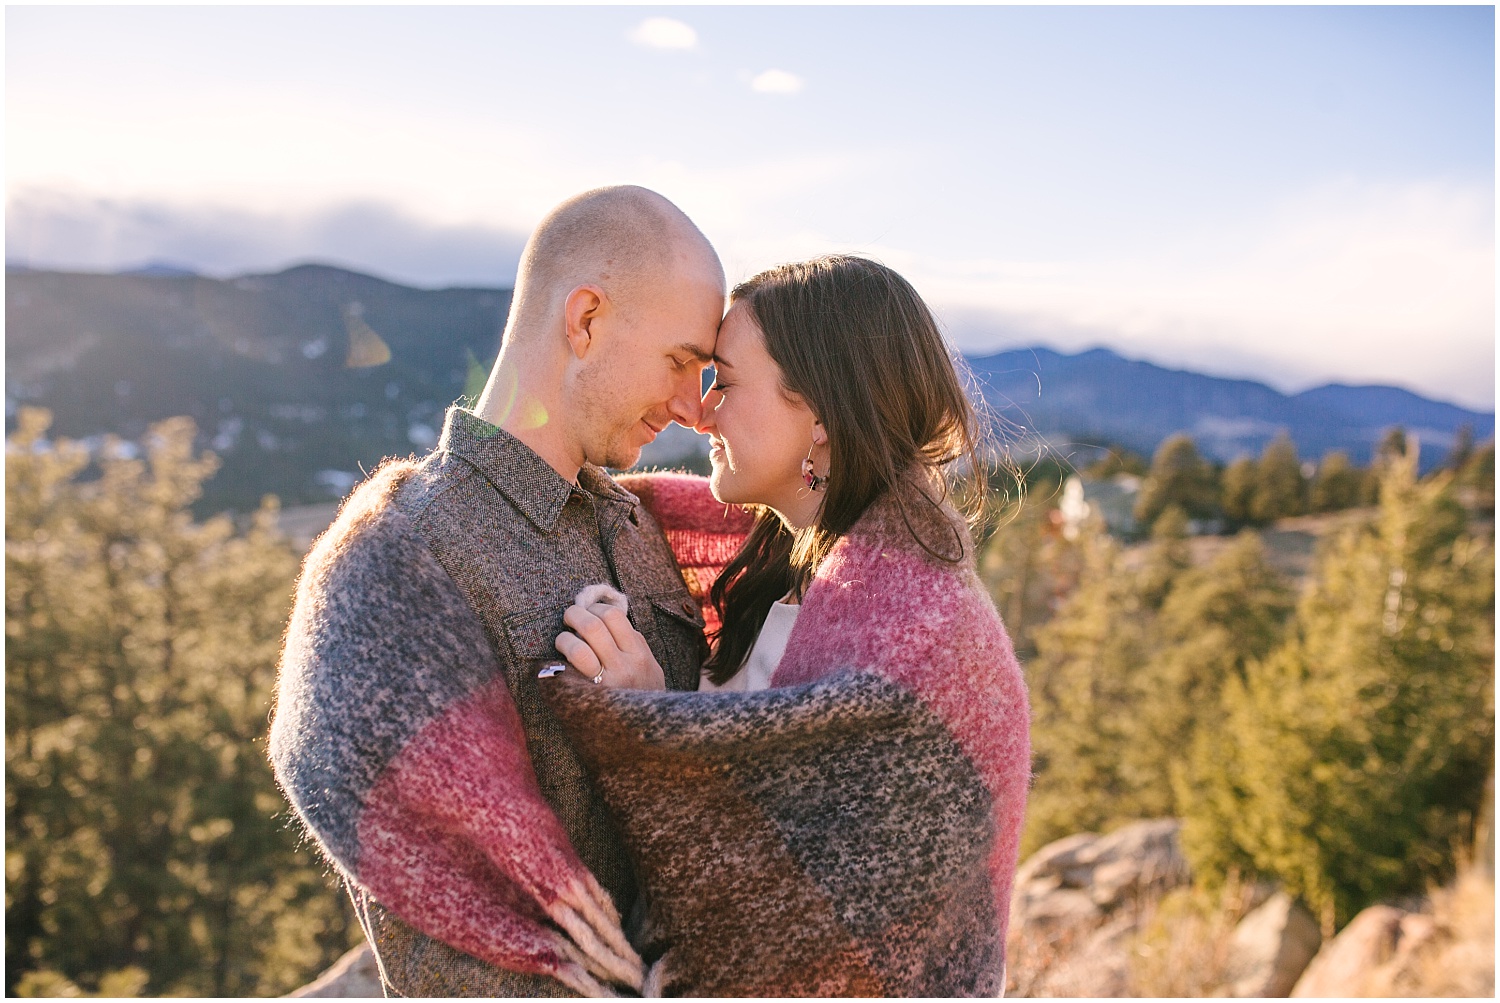 Sunny Mount Falcon engagement photos in Evergreen, Colorado